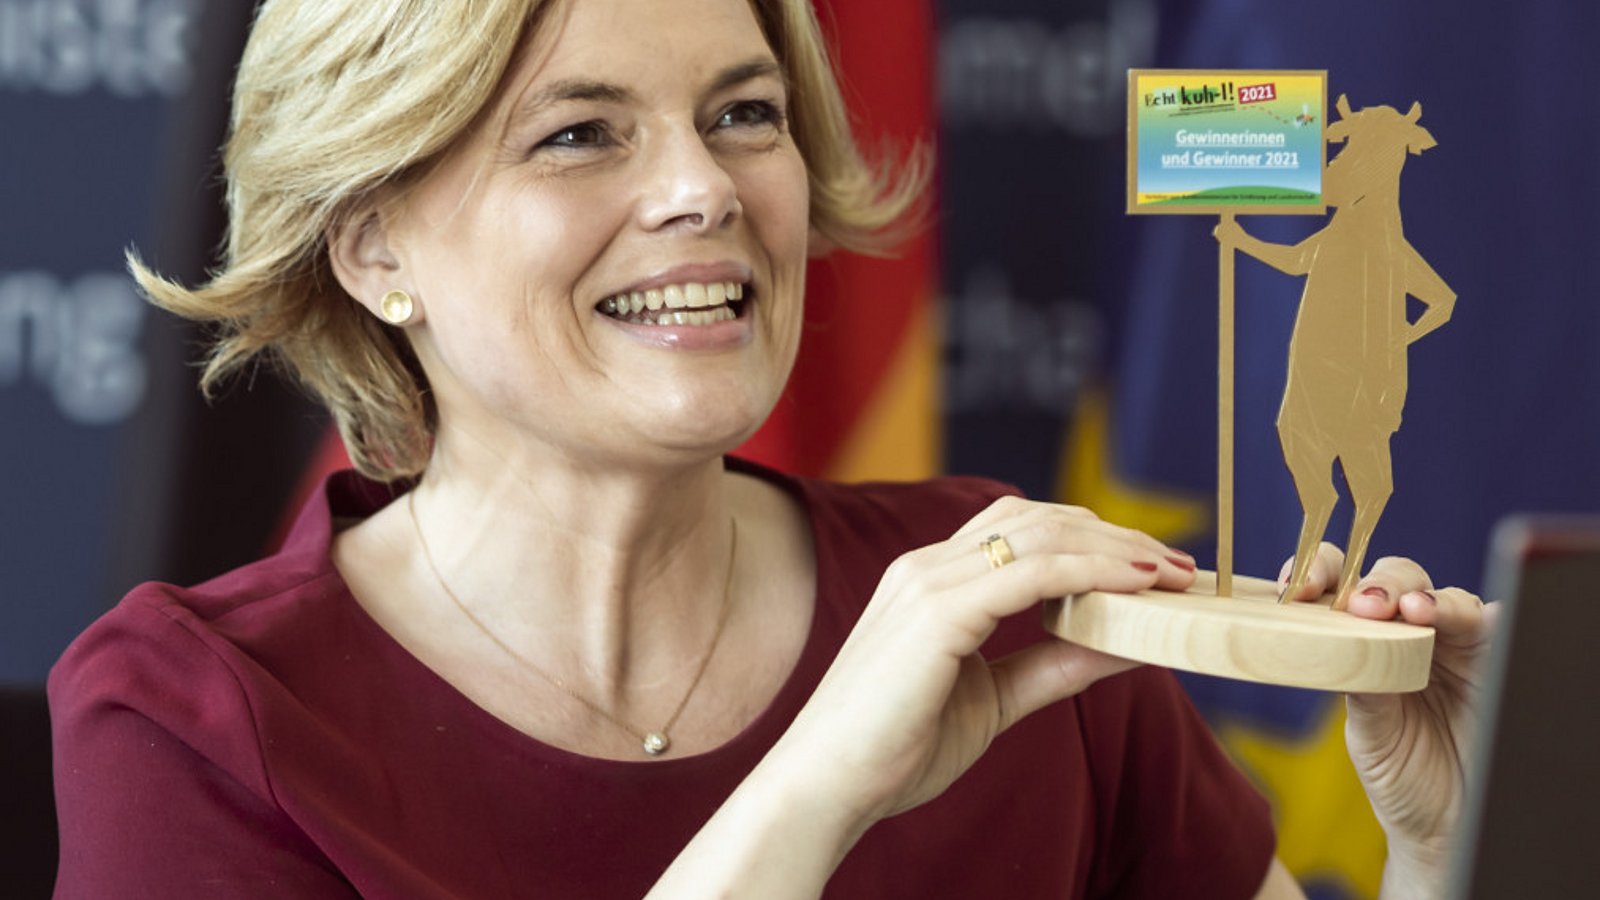 Bundesernährungsministerin Julia Klöckner hält die Trophäe für den Schulwettbewerb Echt kuh-l in der Hand.